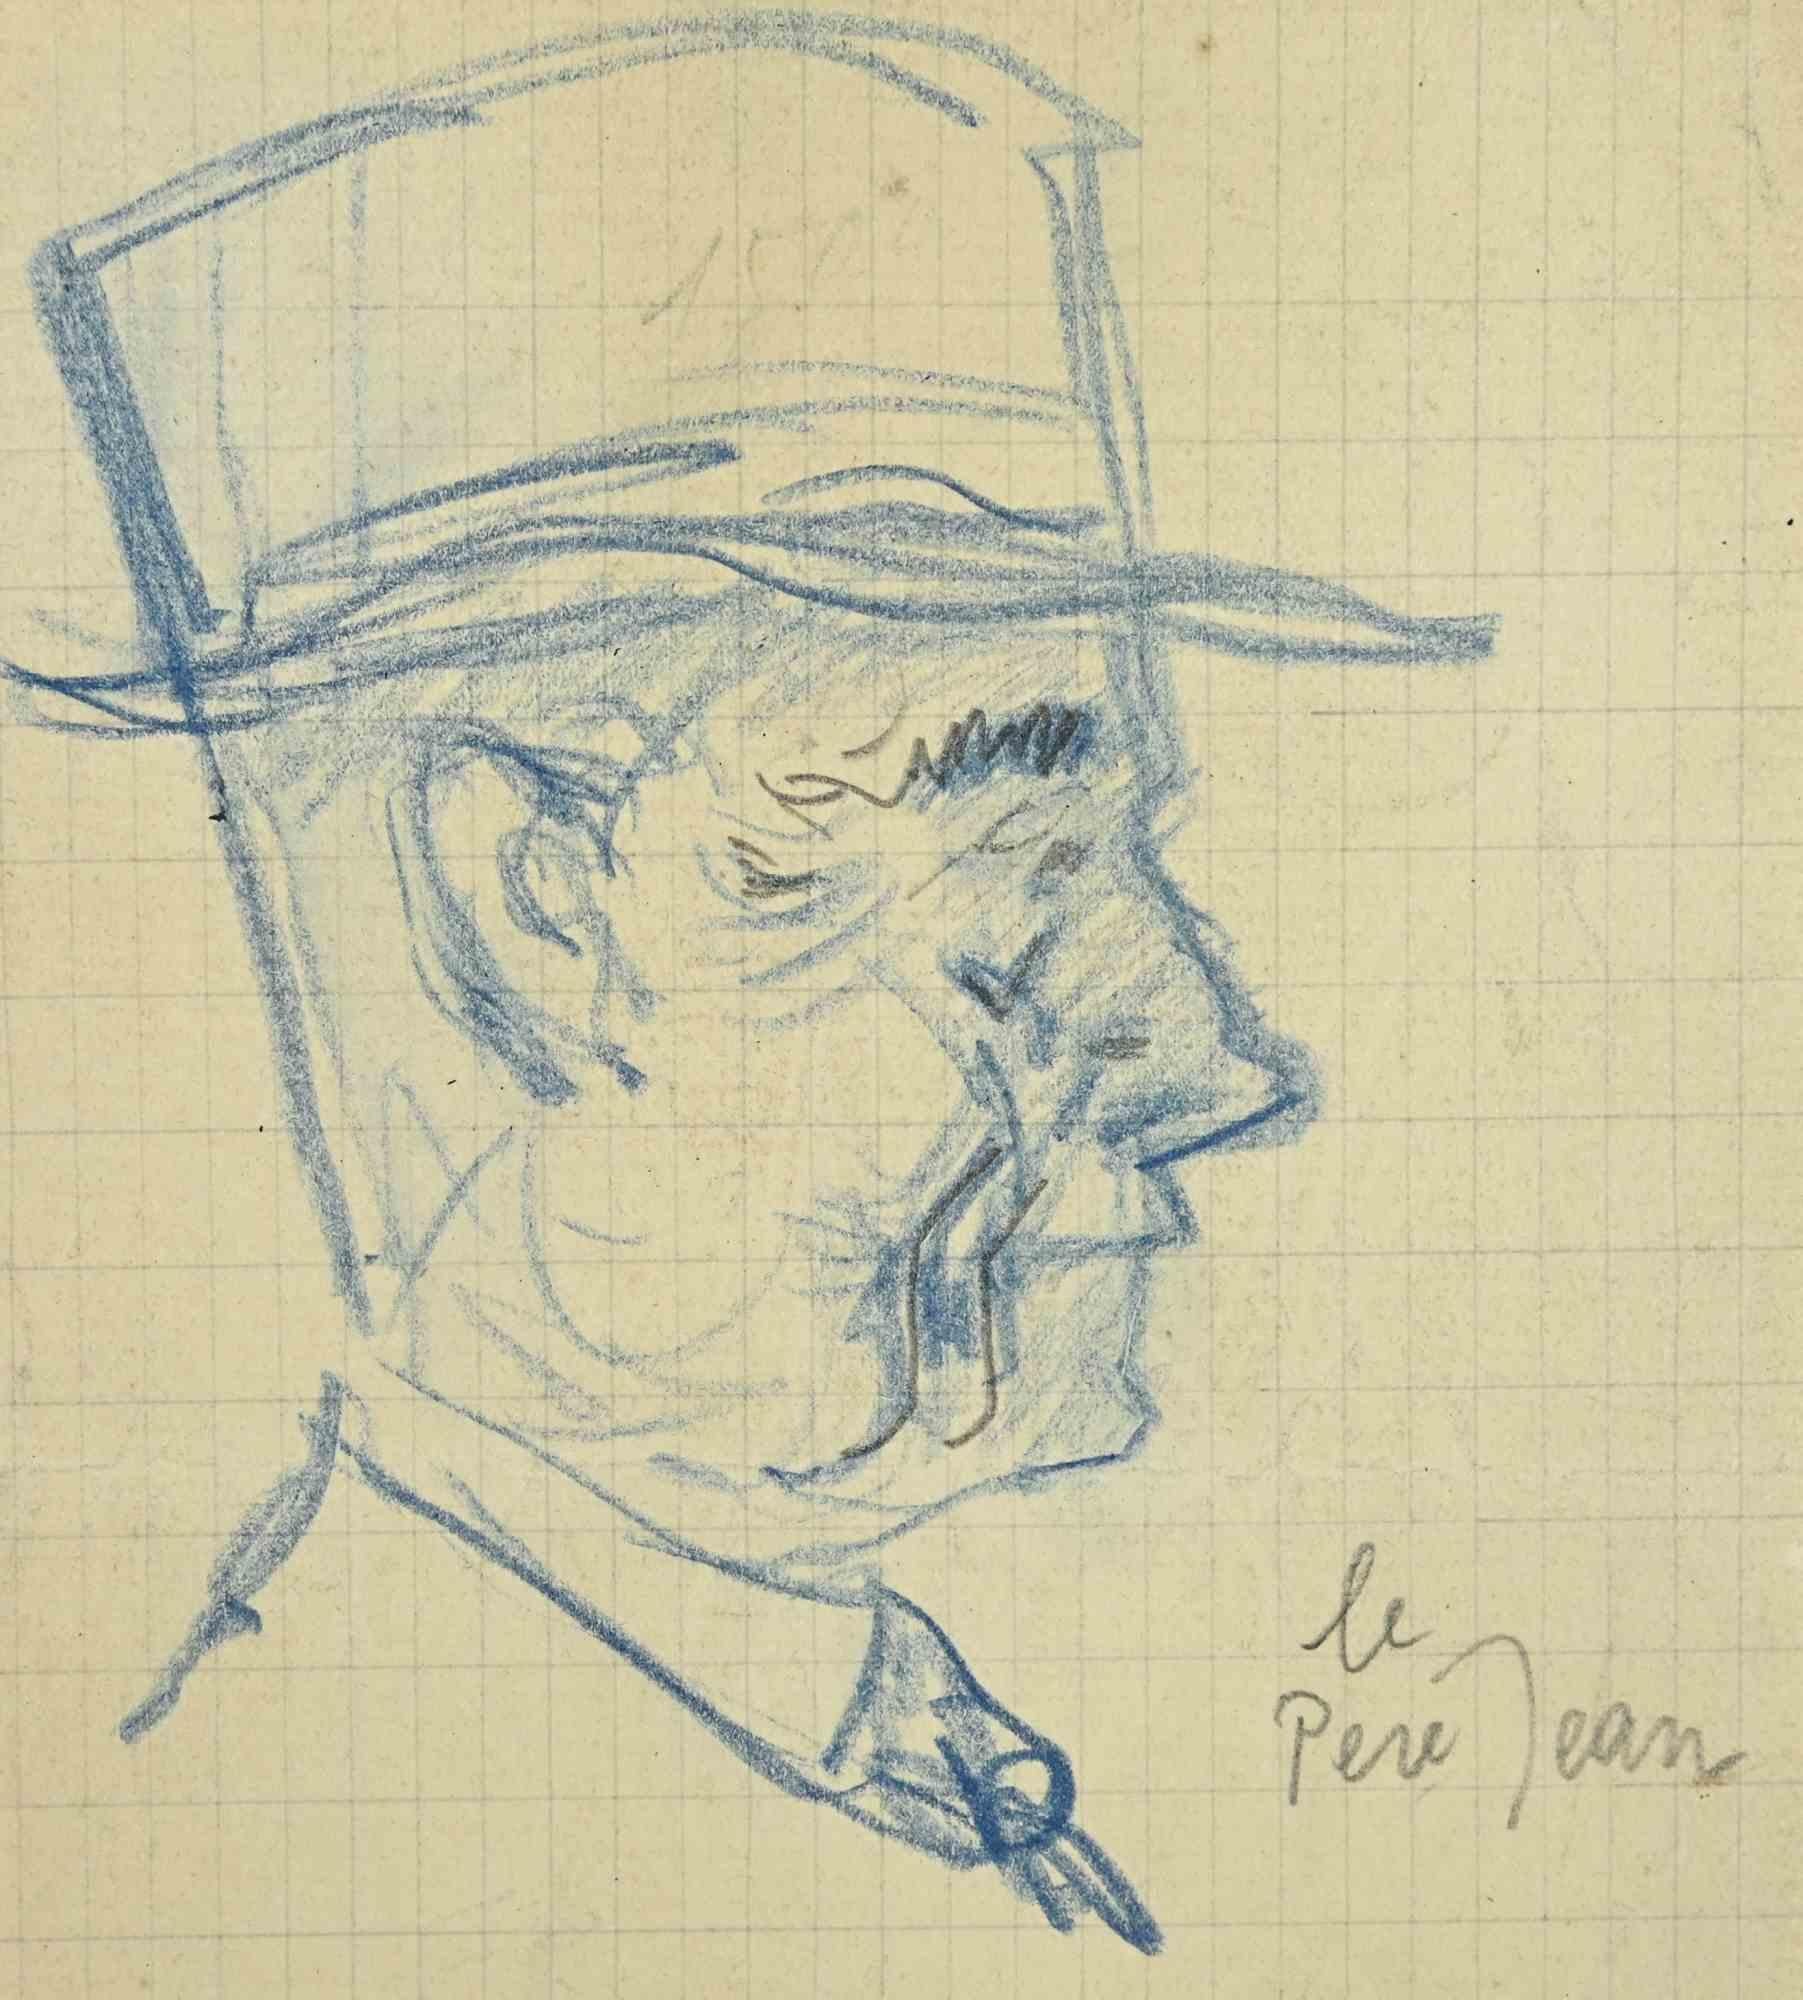 Le Pere Jean est un dessin, réalisé au début du 20e siècle, par l'Artiste français André Meaux Saint-Marc (1885-1941).

Crayon de couleur sur papier. Signé à la main au dos.

